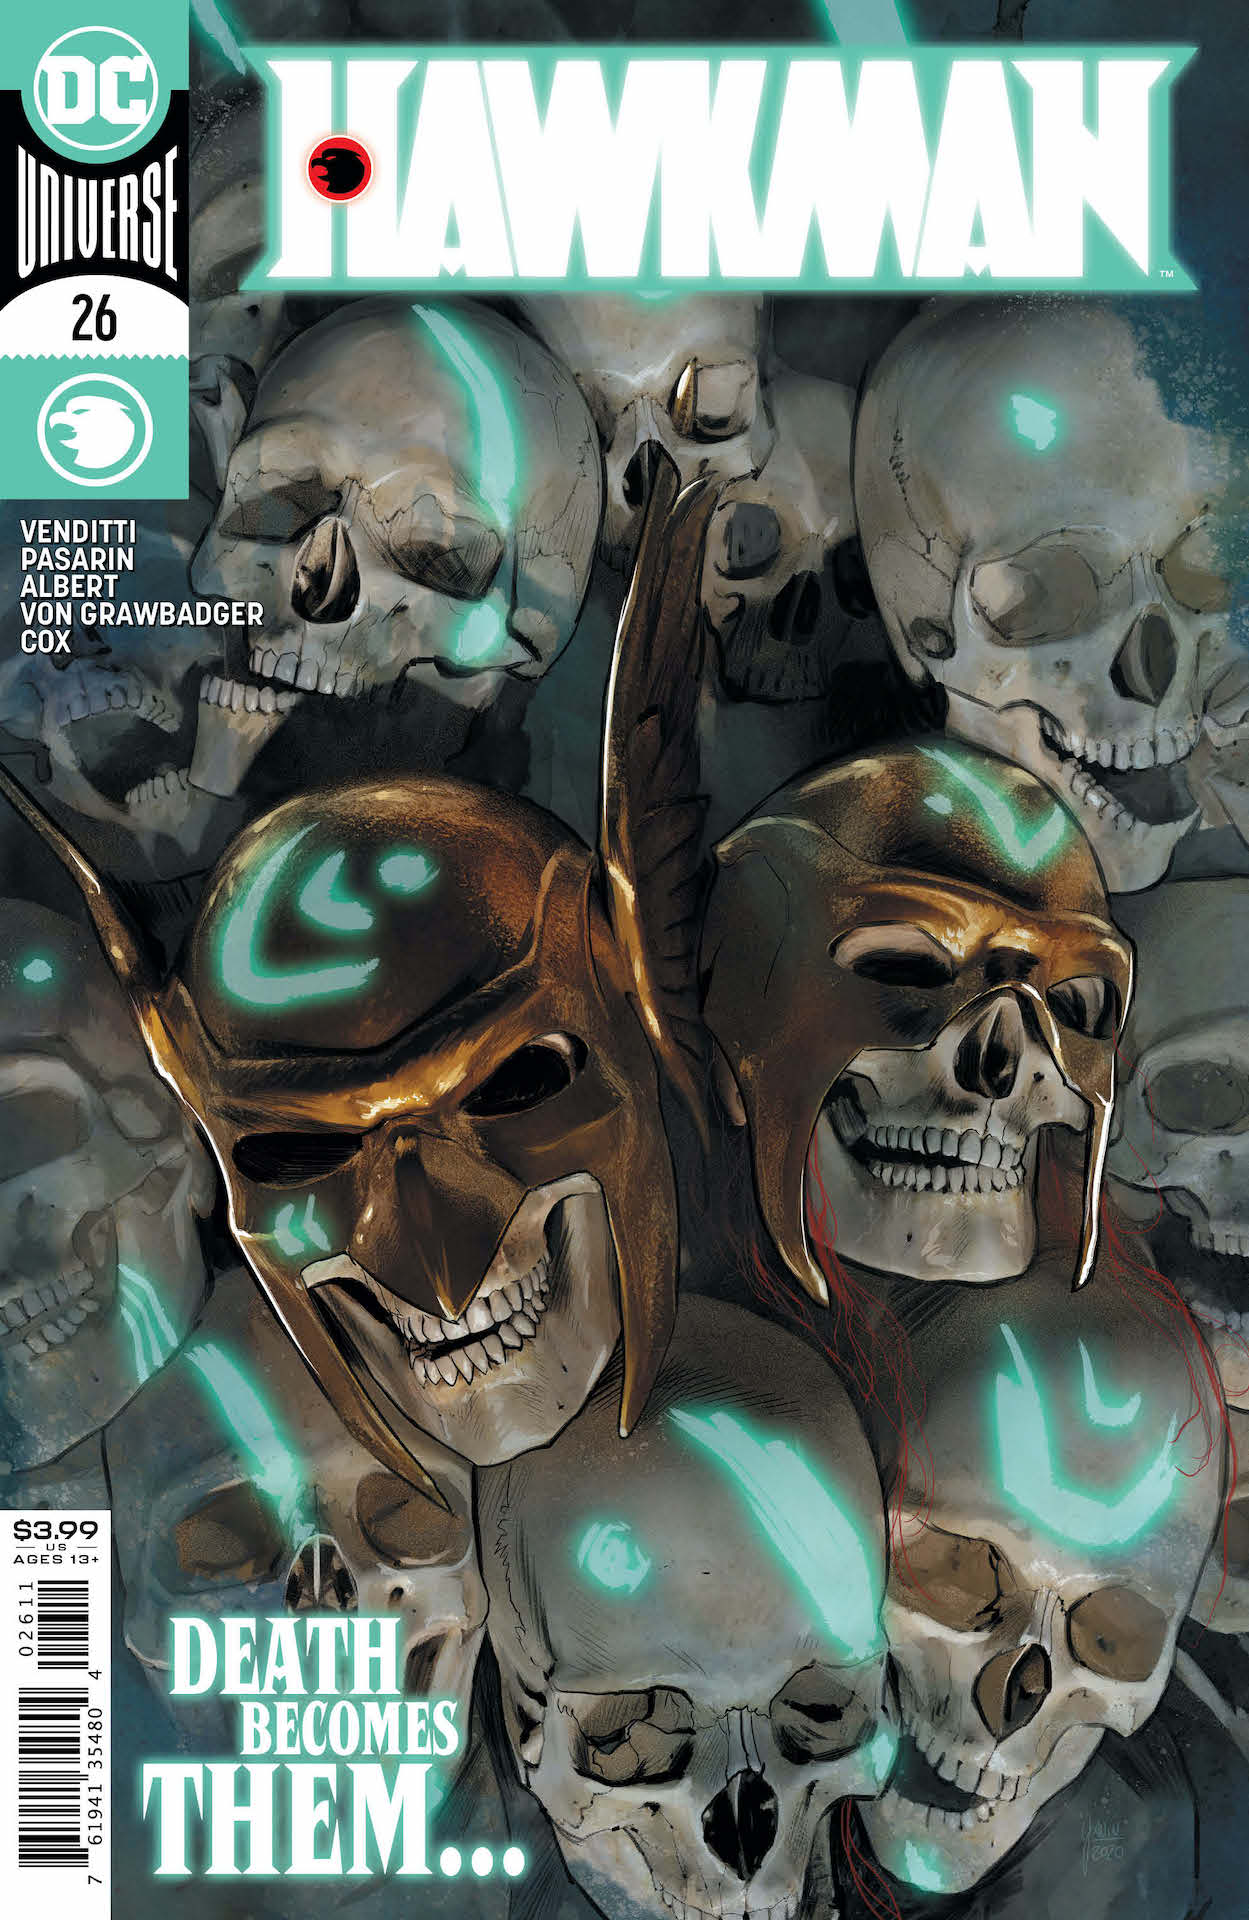 DC Preview: Hawkman #26